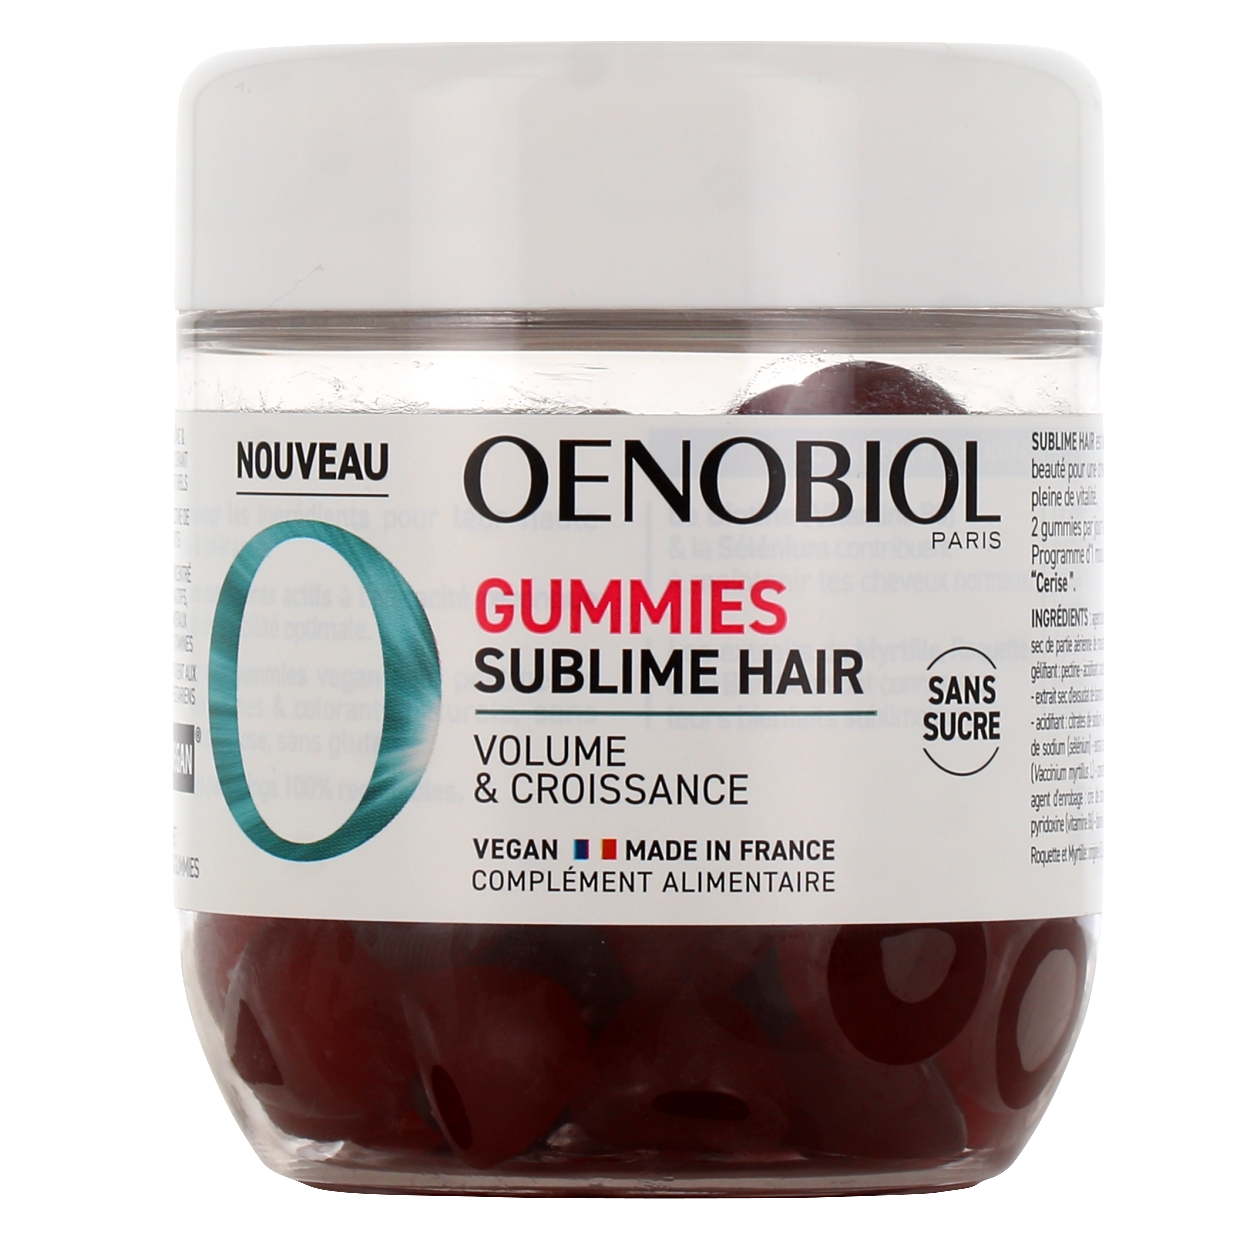 Oenobiol Gummies Sublime Hair Complément Alimentaire Cheveux